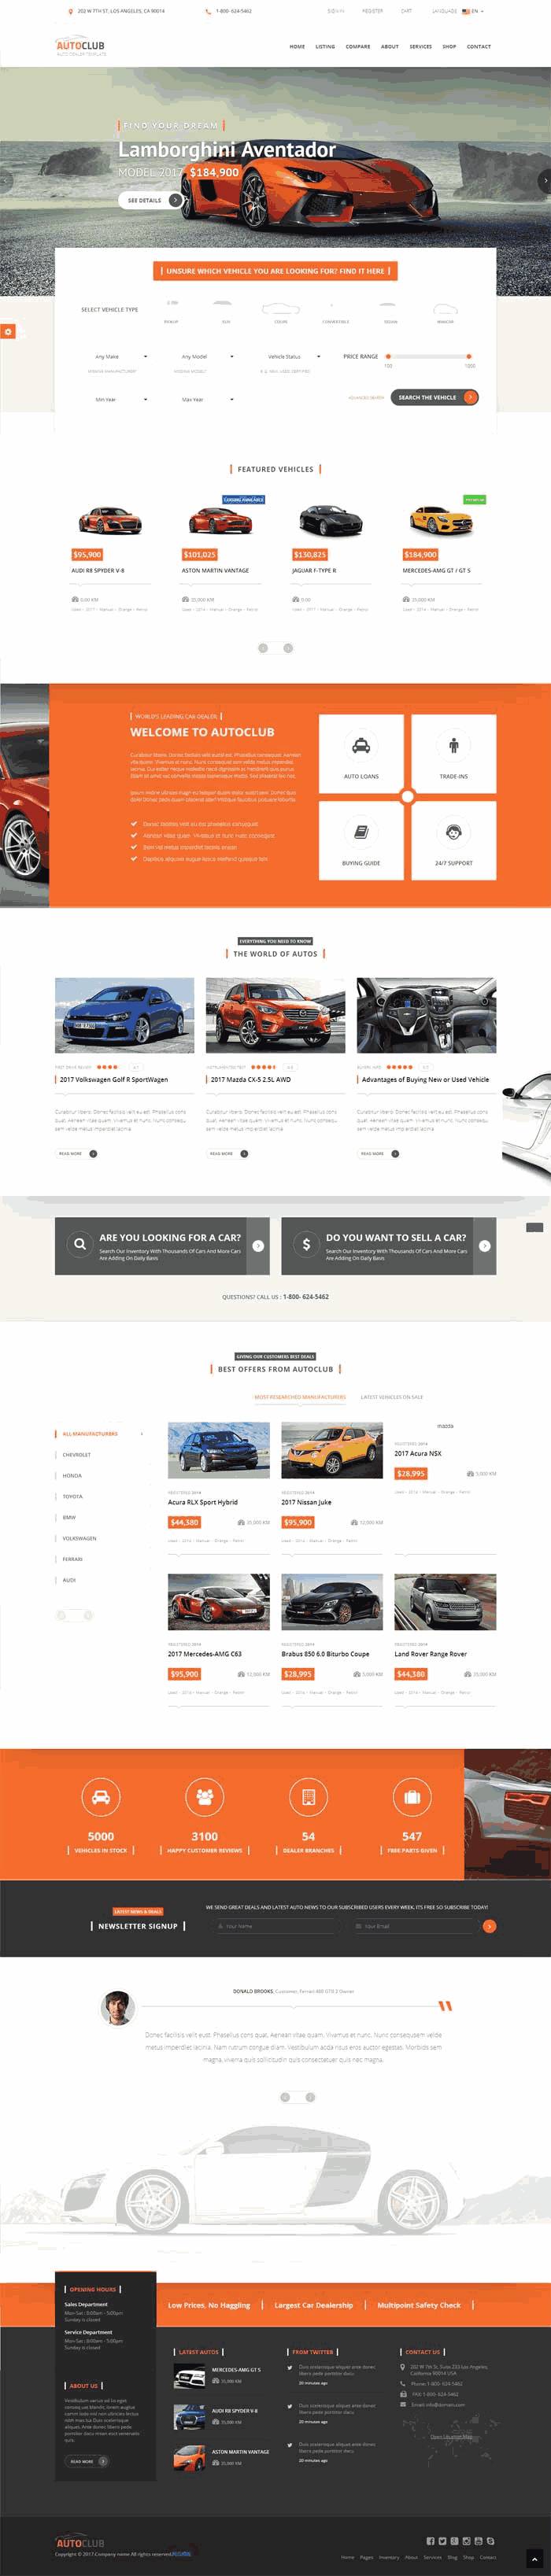 橙色大气4S店汽车销售网站模板源码下载演示图